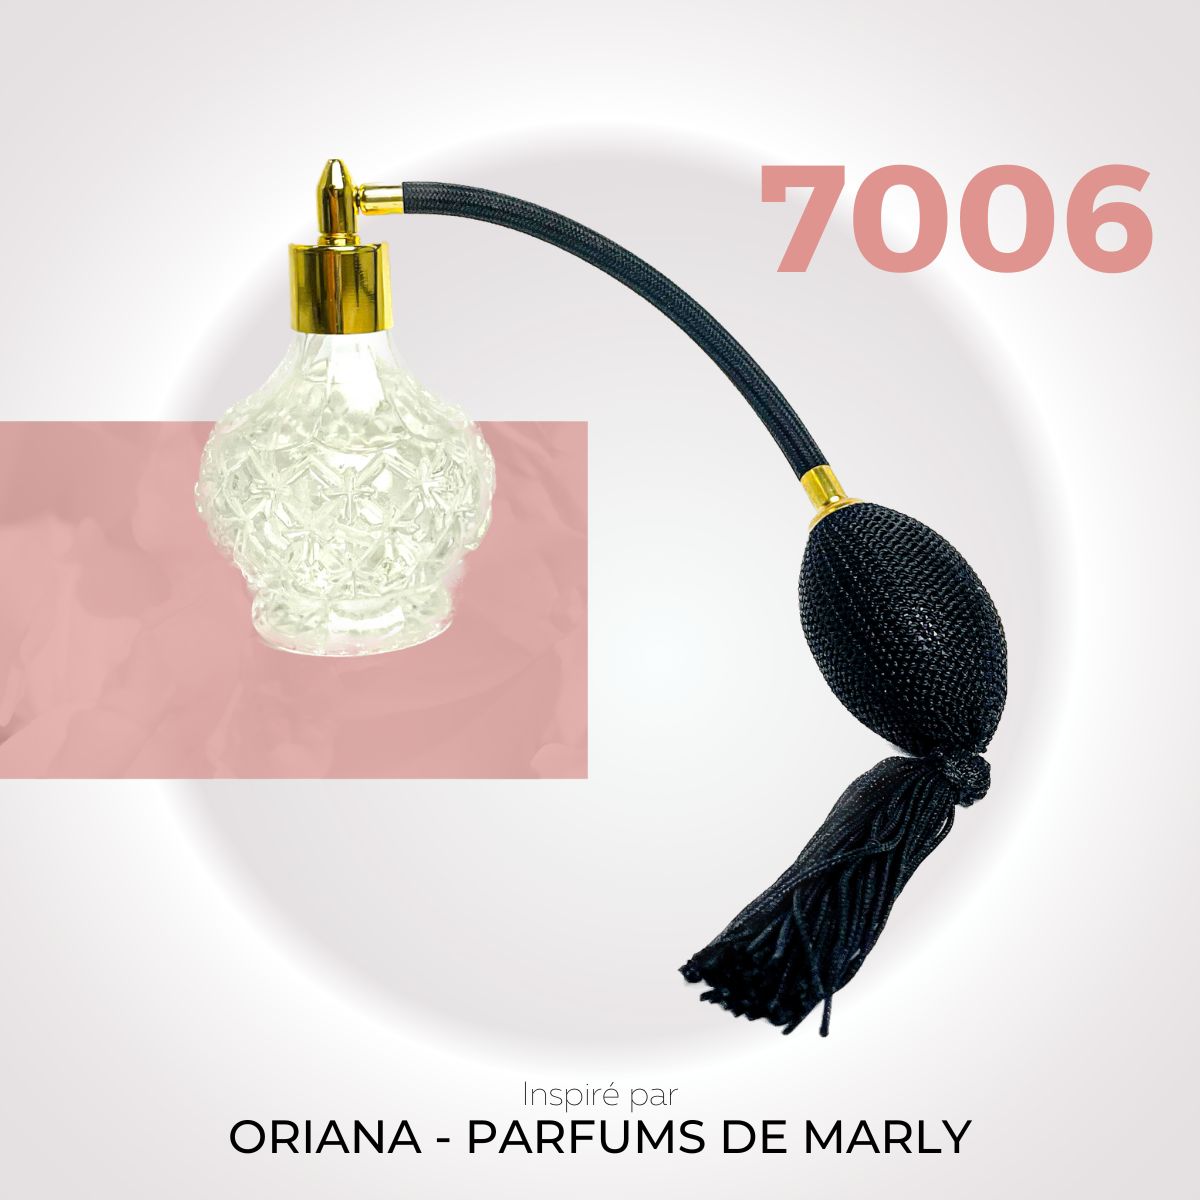 Nº 7006 - Oriana - Parfums de Marly